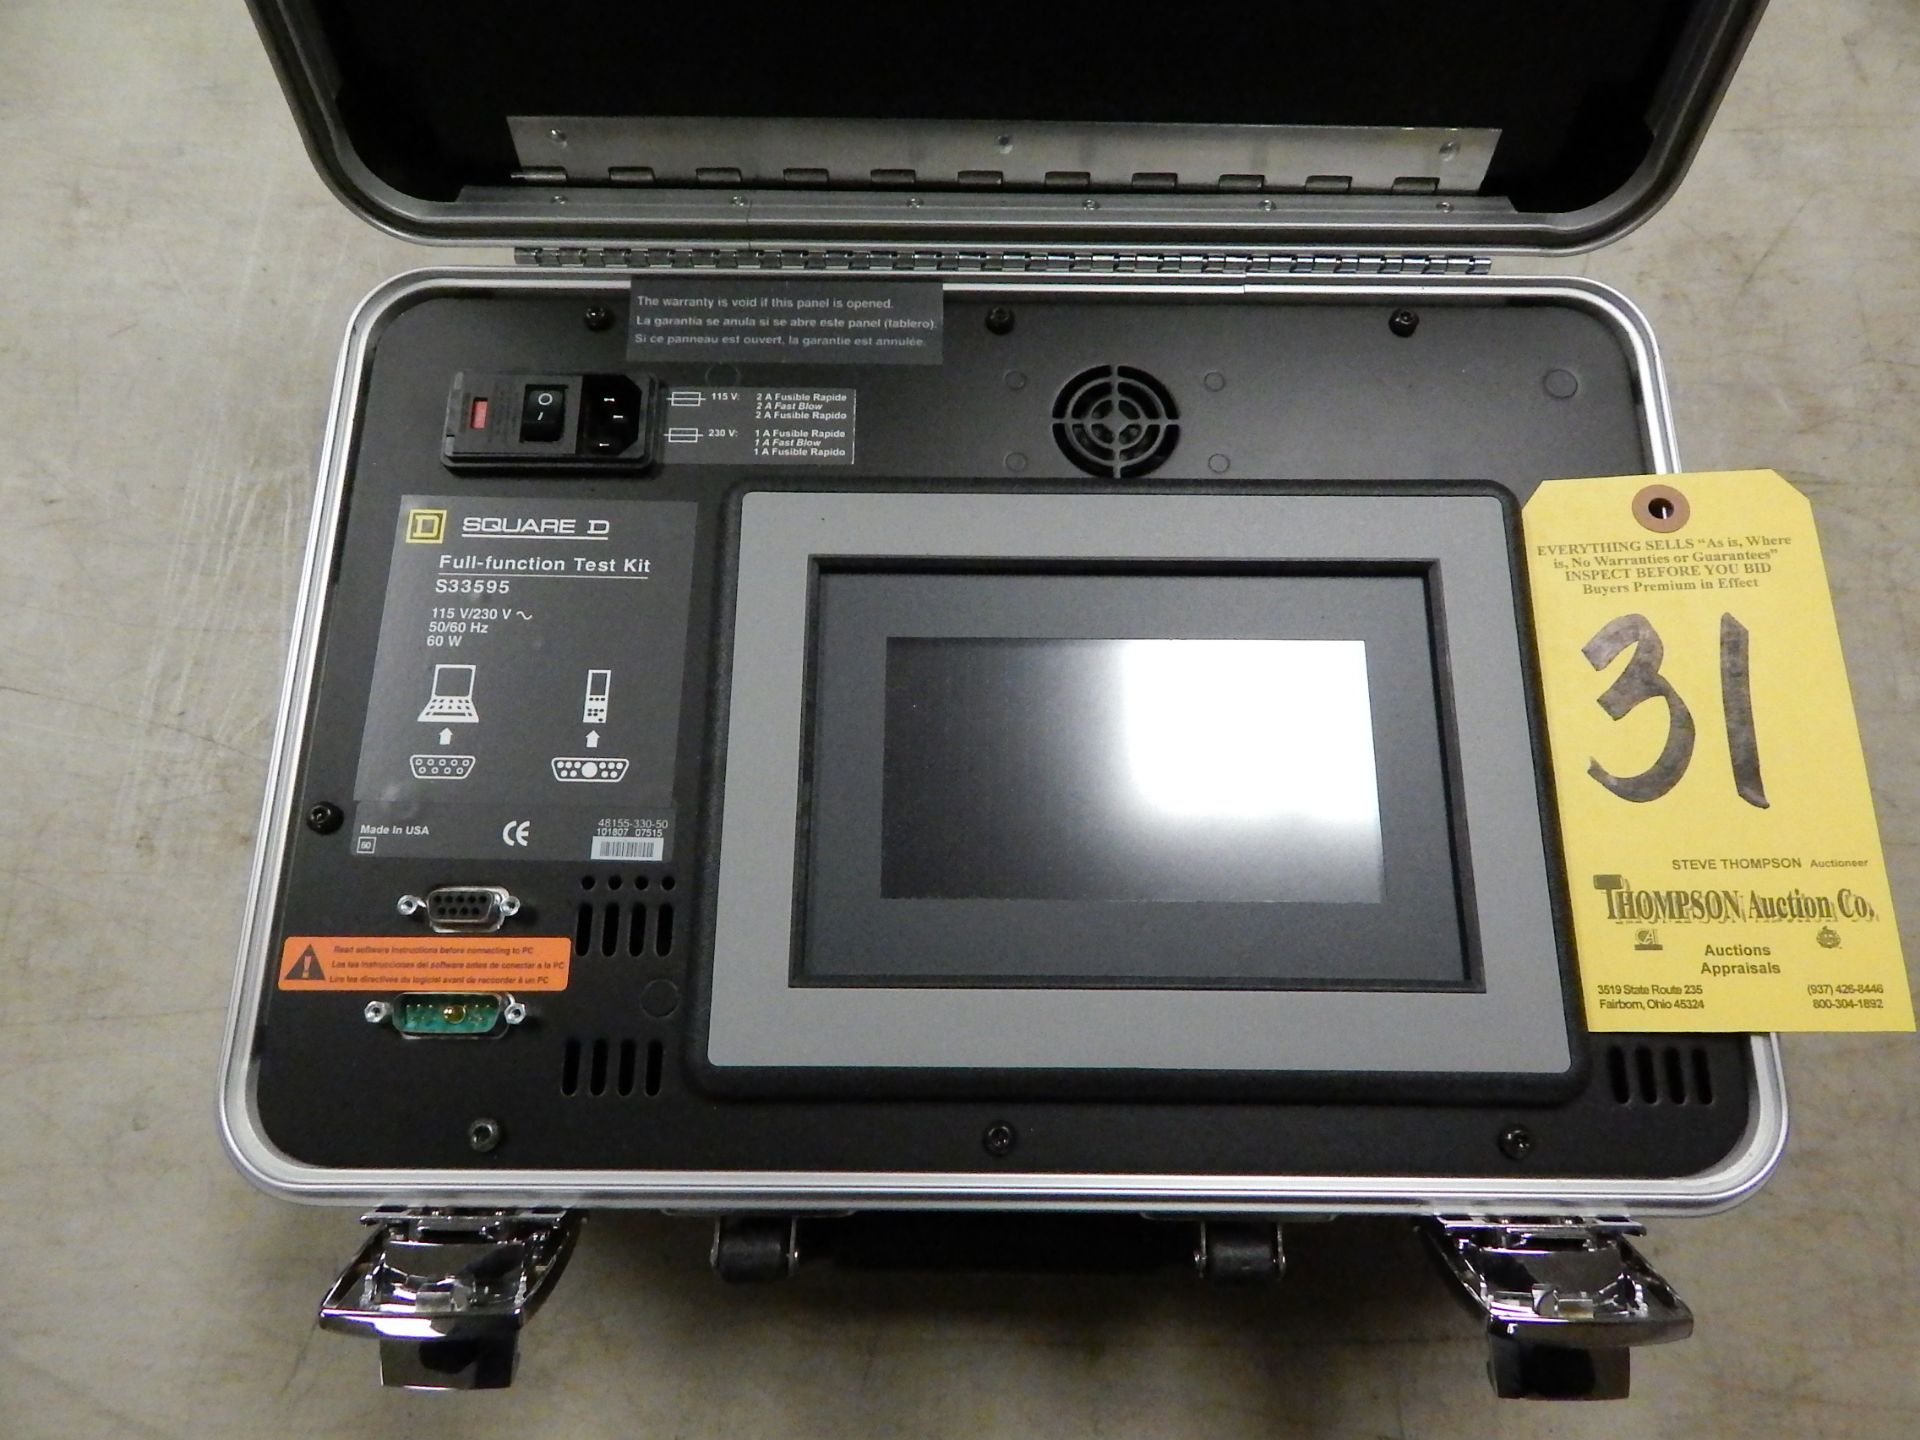 Square D S33595 Full-Function Test Kit